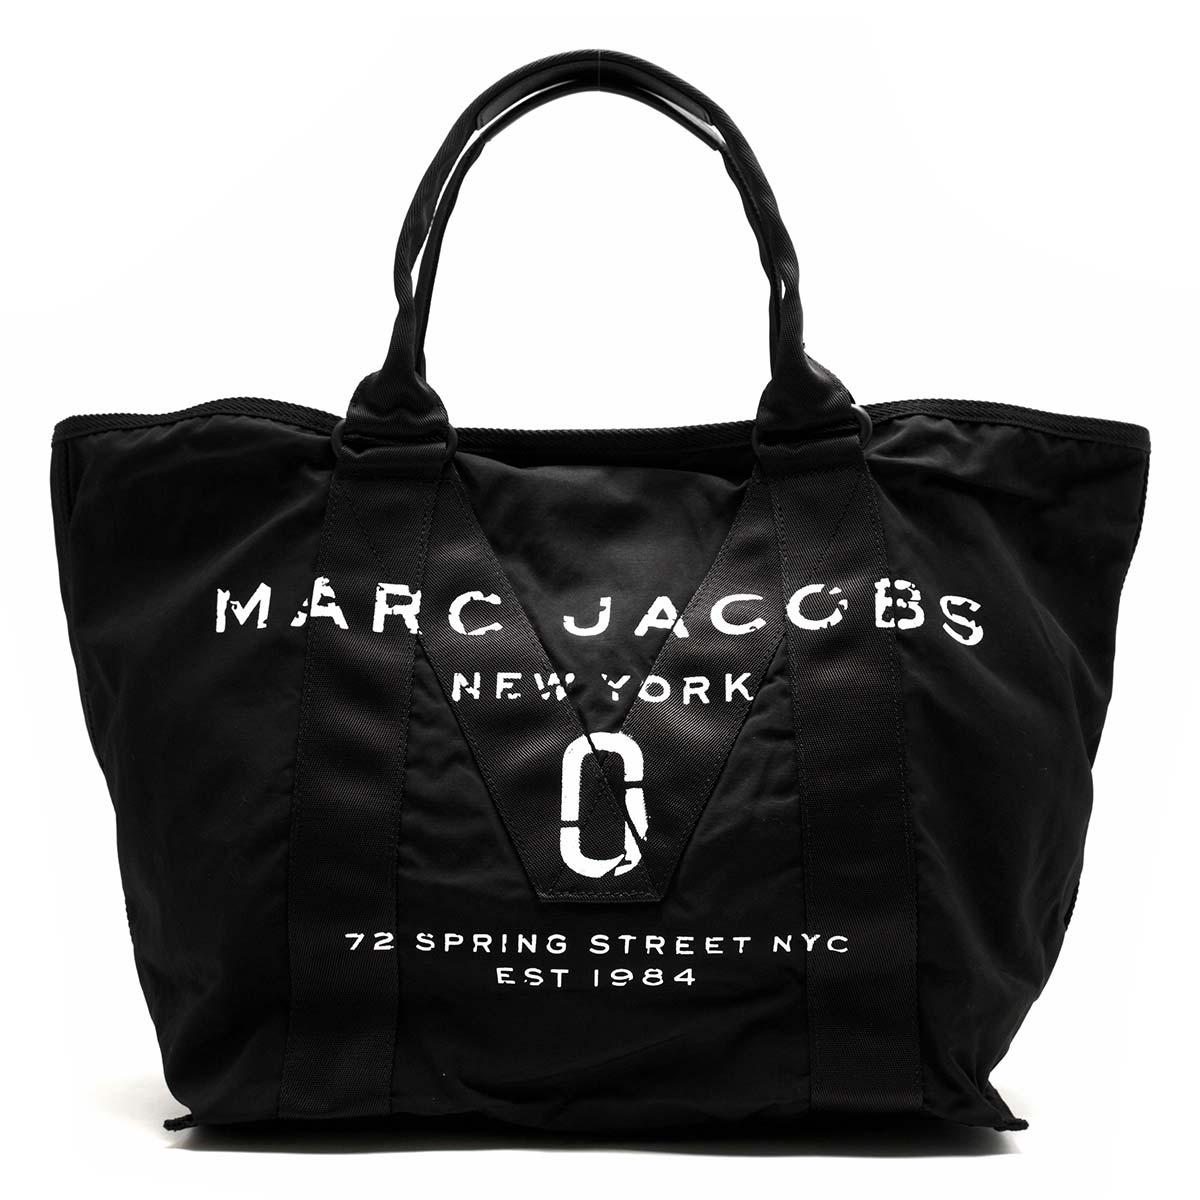 マークジェイコブス トートバッグ バッグ レディース ニュー ロゴ ブラック M 001 1sz Marc Jacobs ブランド腕時計通販なら ブルークウォッチカンパニー 心斎橋店